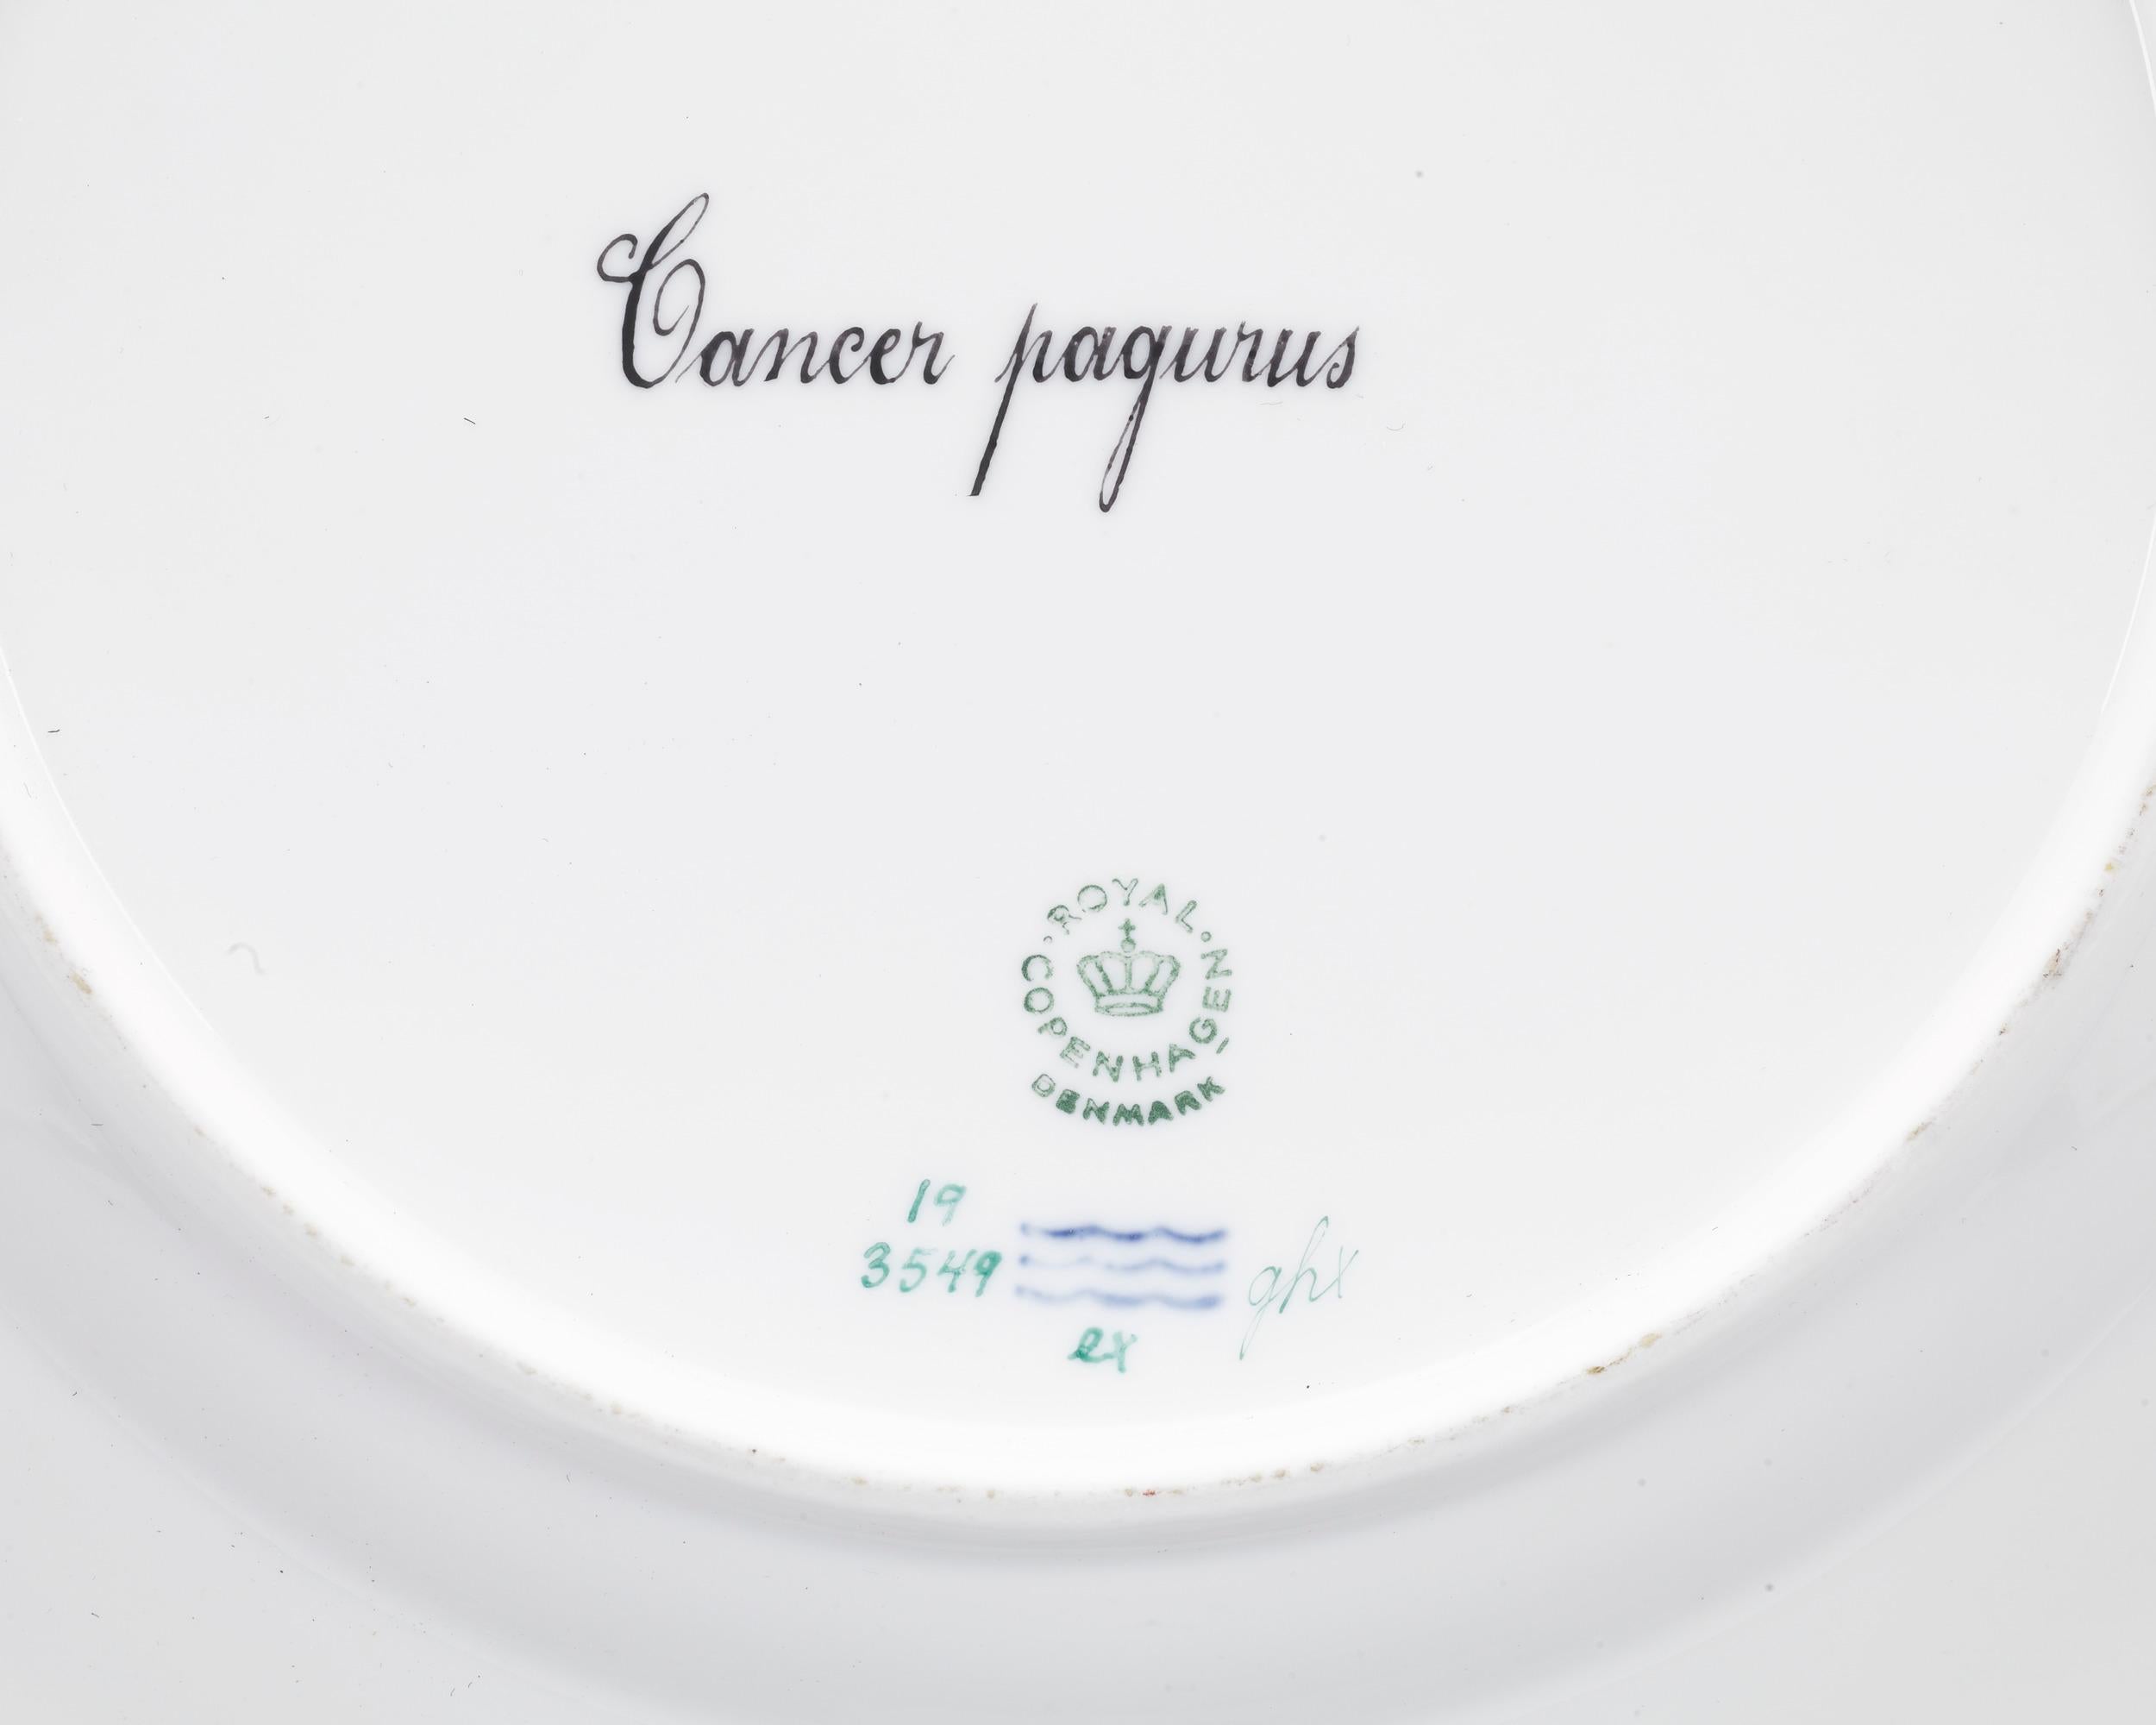 Cette impressionnante assiette en porcelaine de Royal Copenhagen reprend le célèbre motif Flora Danica. Cependant, au lieu des fleurs indigènes plus typiquement utilisées dans la porcelaine Flora Danica, cette assiette fait partie d'un sous-ensemble